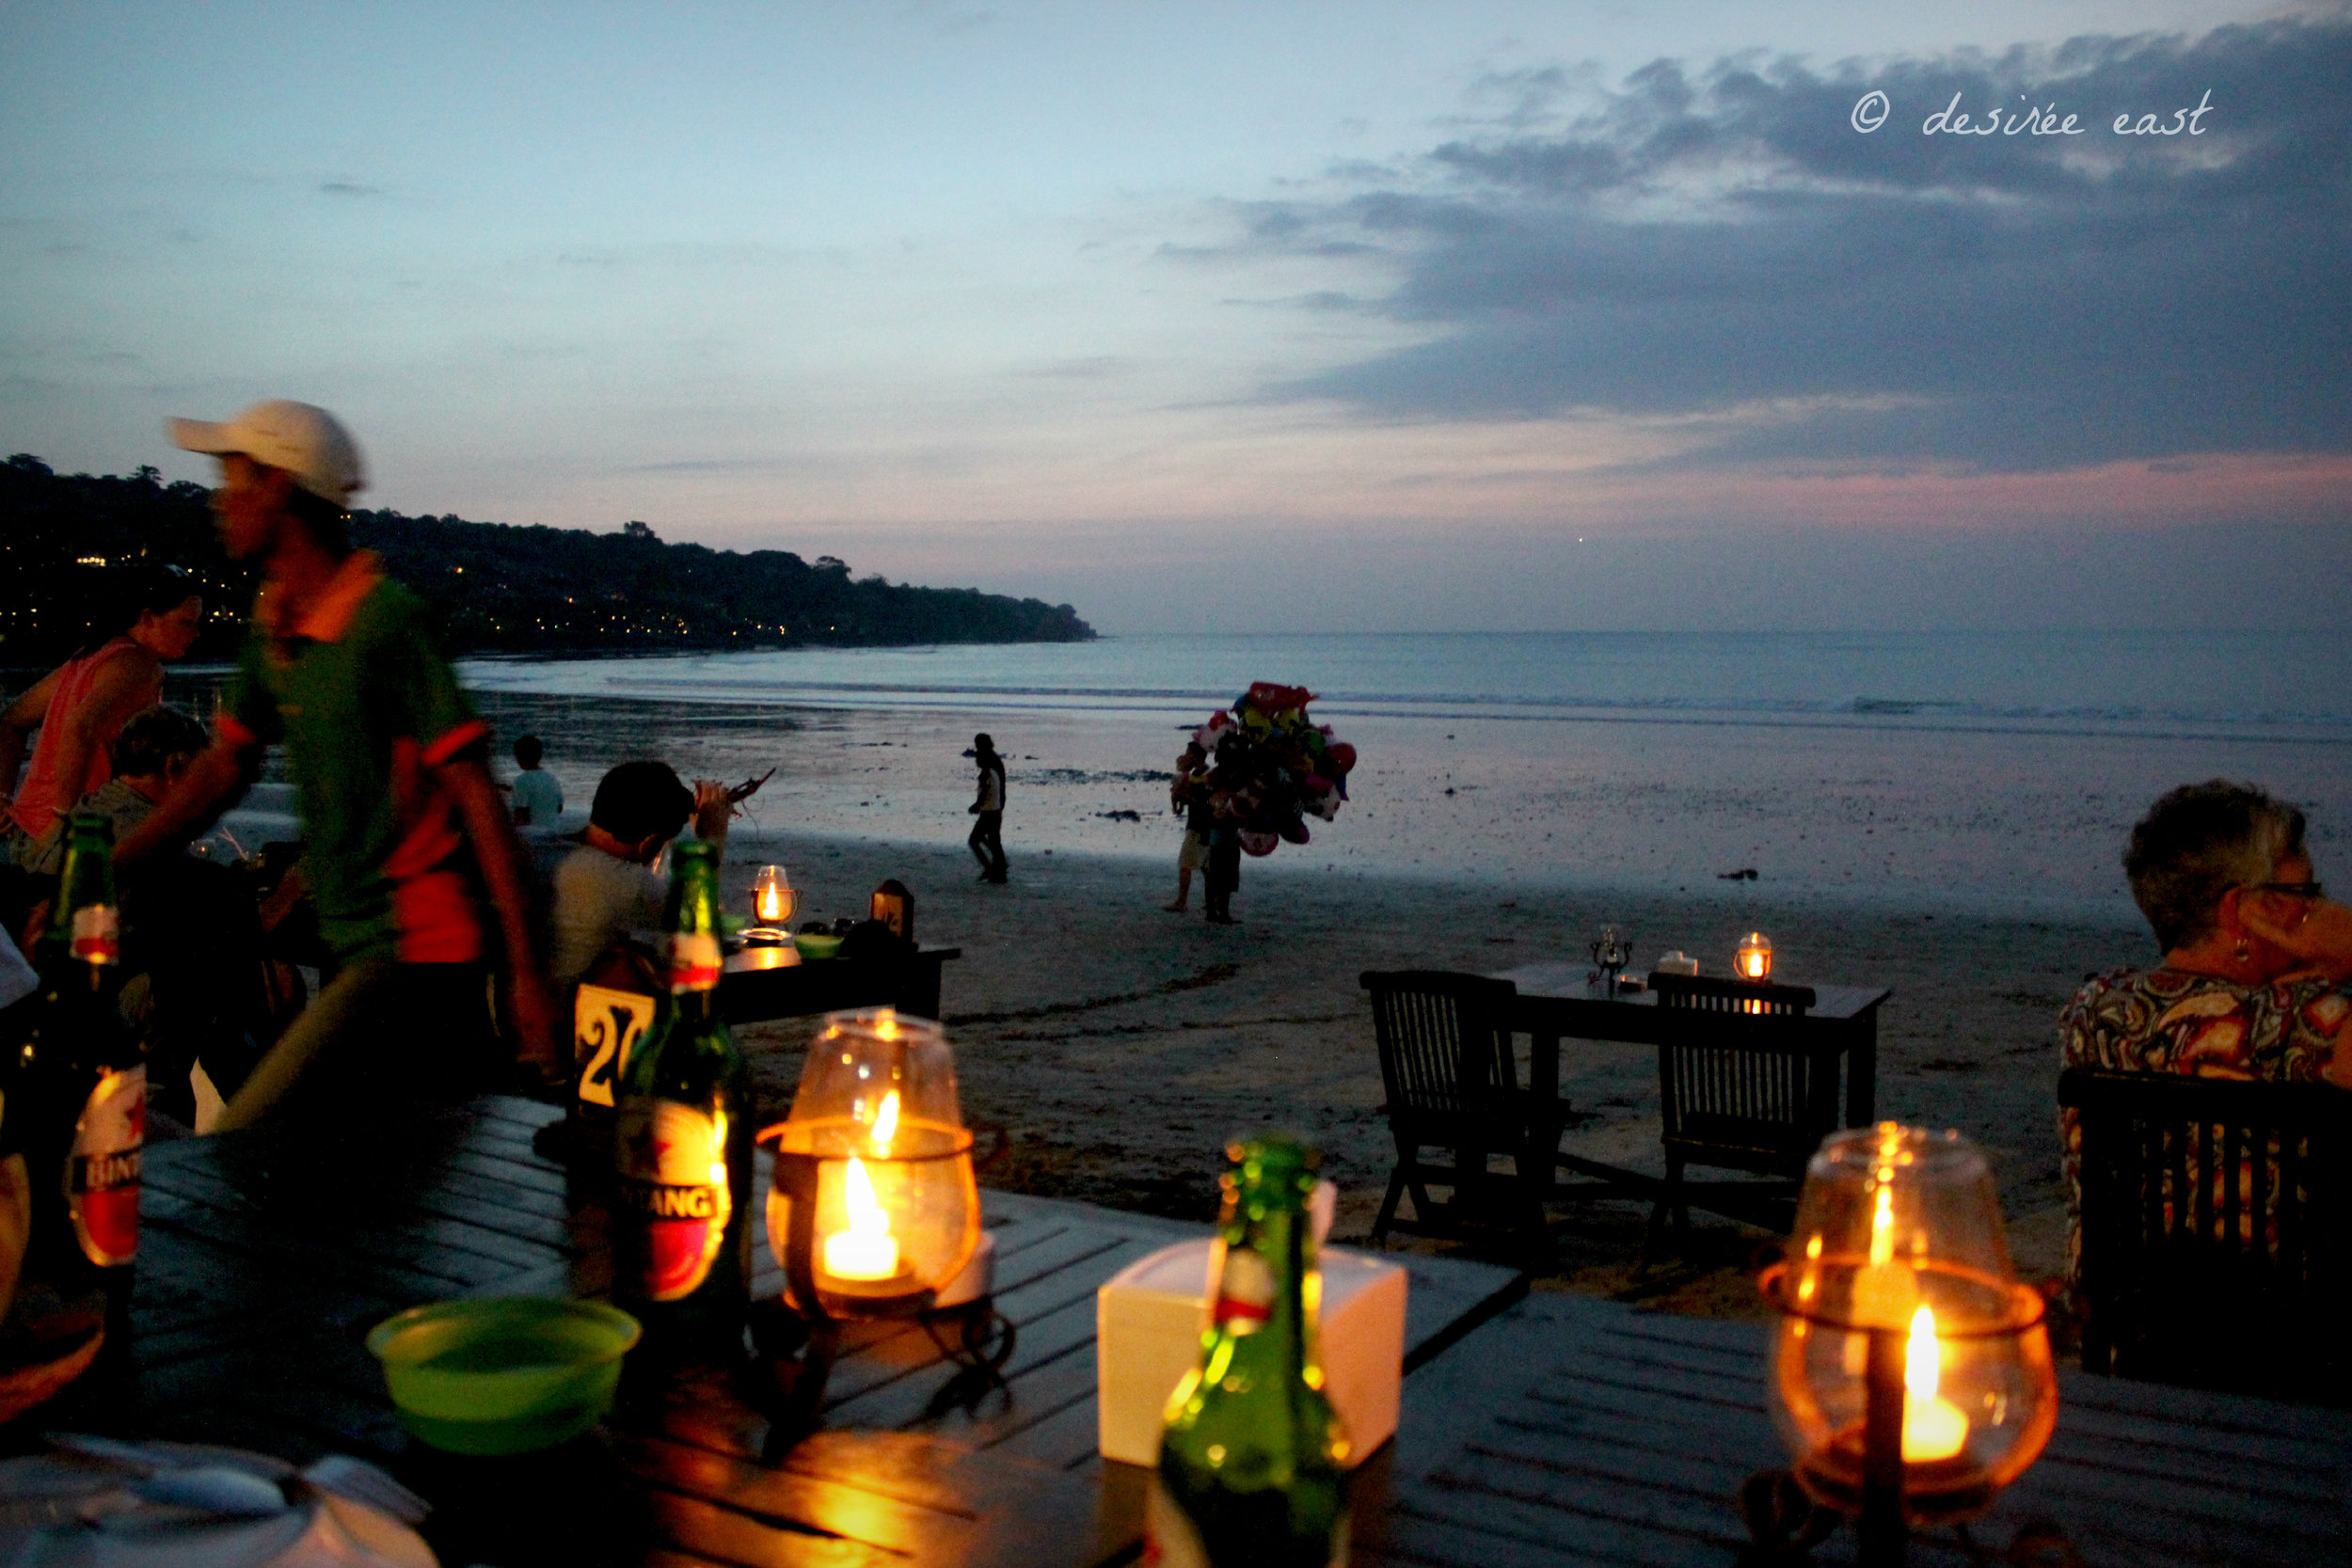 seafood dinner on the beach. jimbaran, bali. photo by desiree east